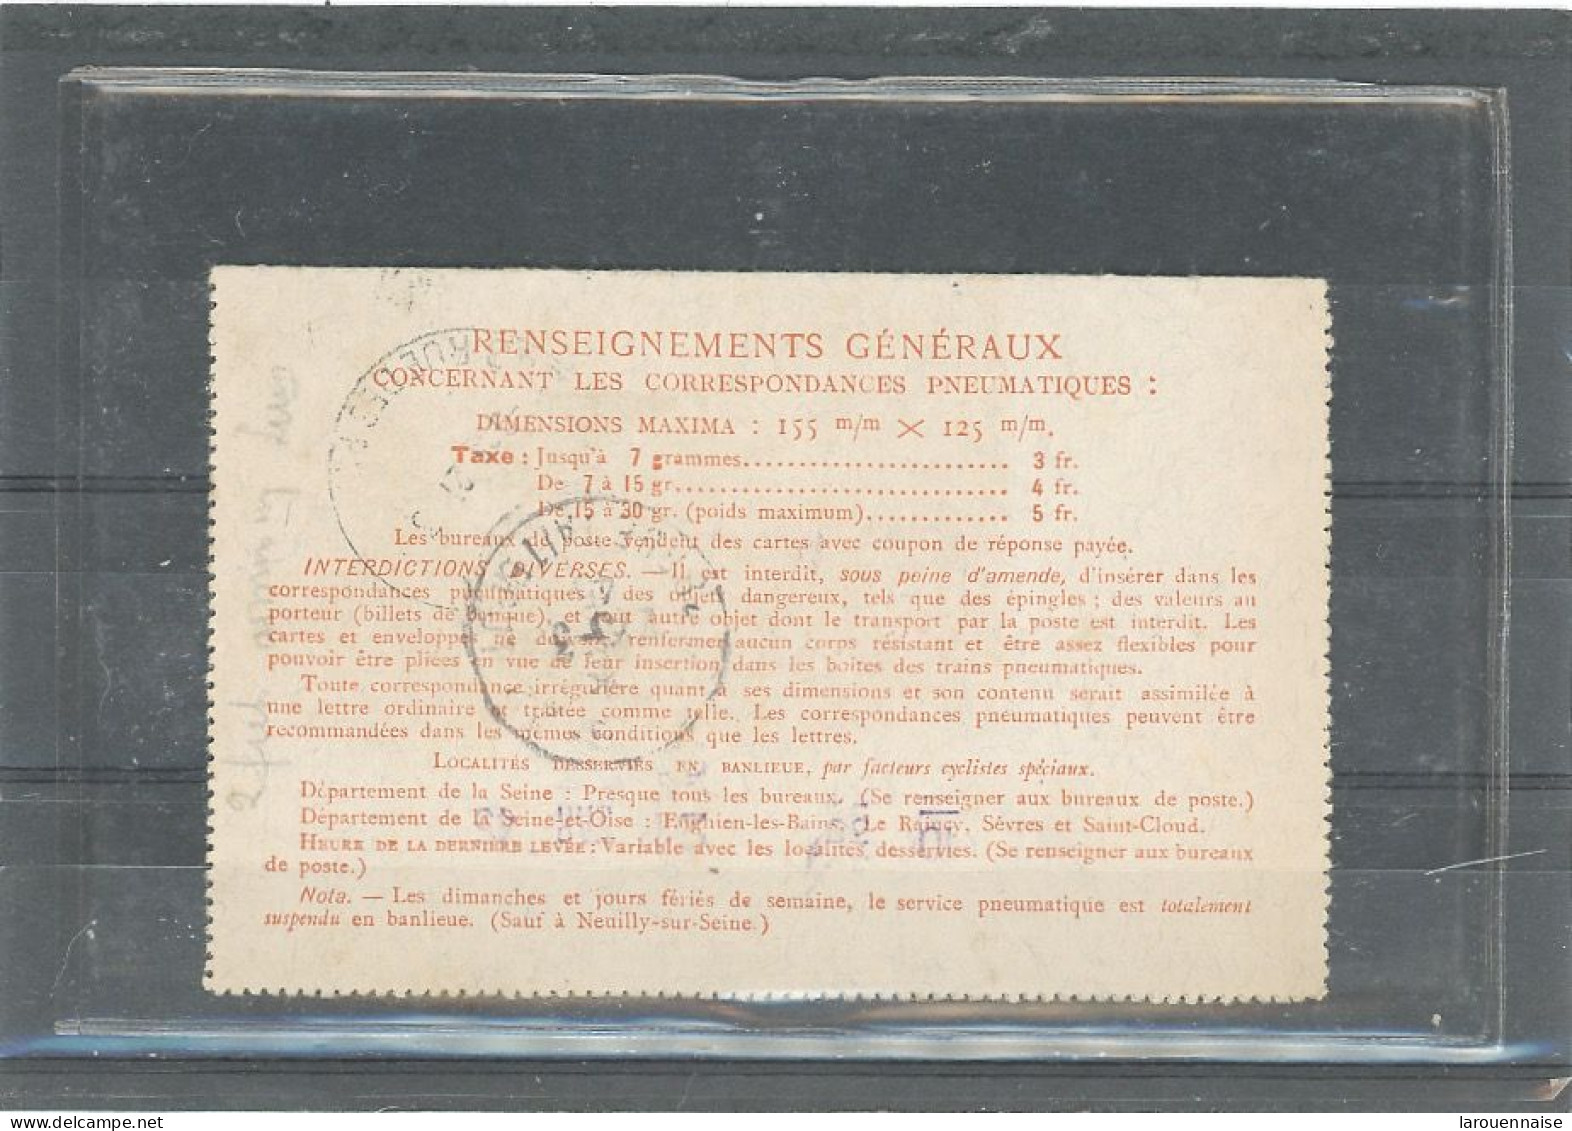 ENTIER -PNEUMATIQUE  1944-TYPE CHAPLAIN -N°2607 CLPP +IRIS (655) 3f ORANGE EN COMPLÉMENT -NOUVEAU TARIF1945 CàD20-3-45 - Pneumatic Post